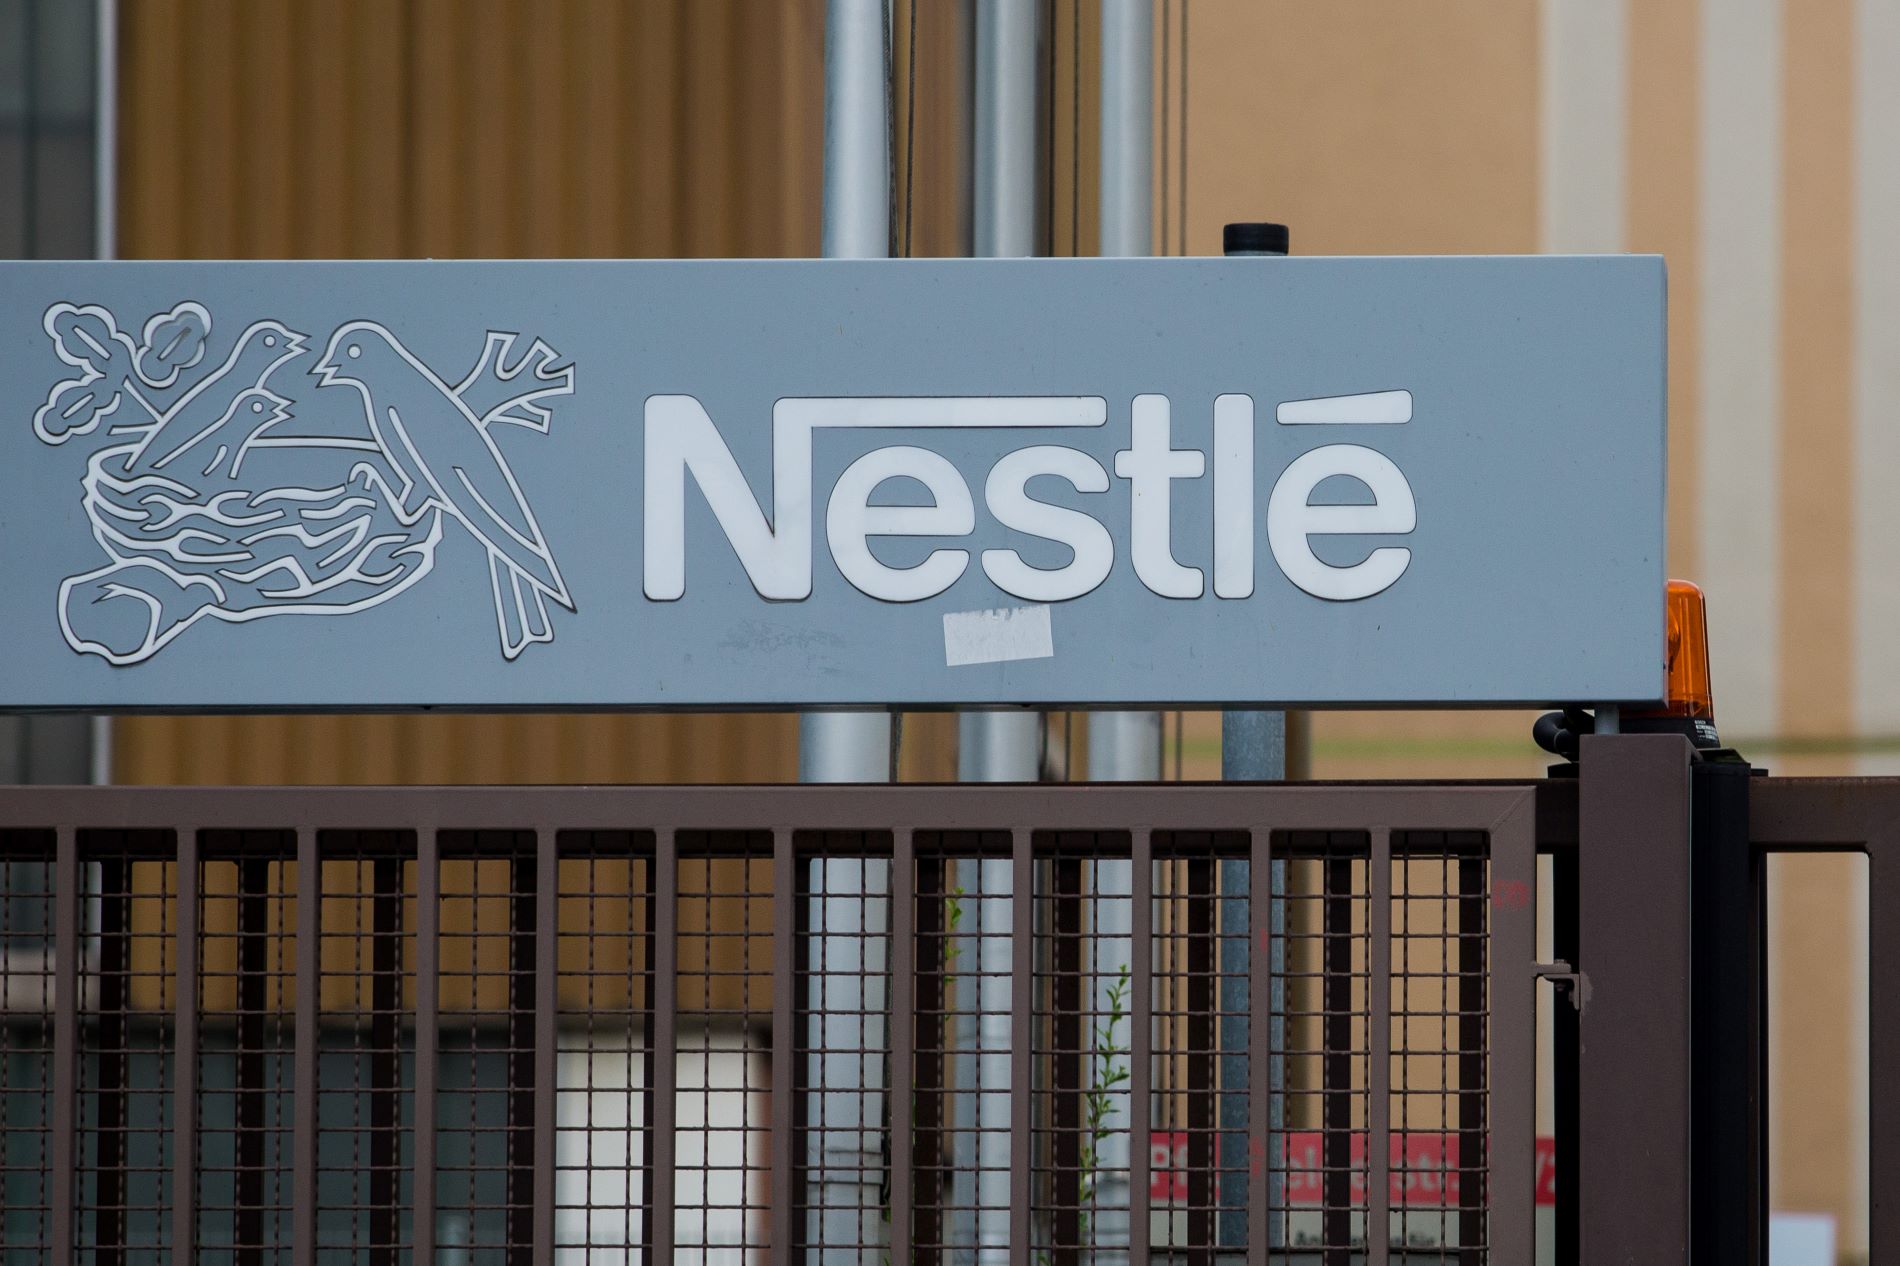 Nestlé ingresa cerca de 24.000 millones de euros gracias al encarecimiento de sus productos